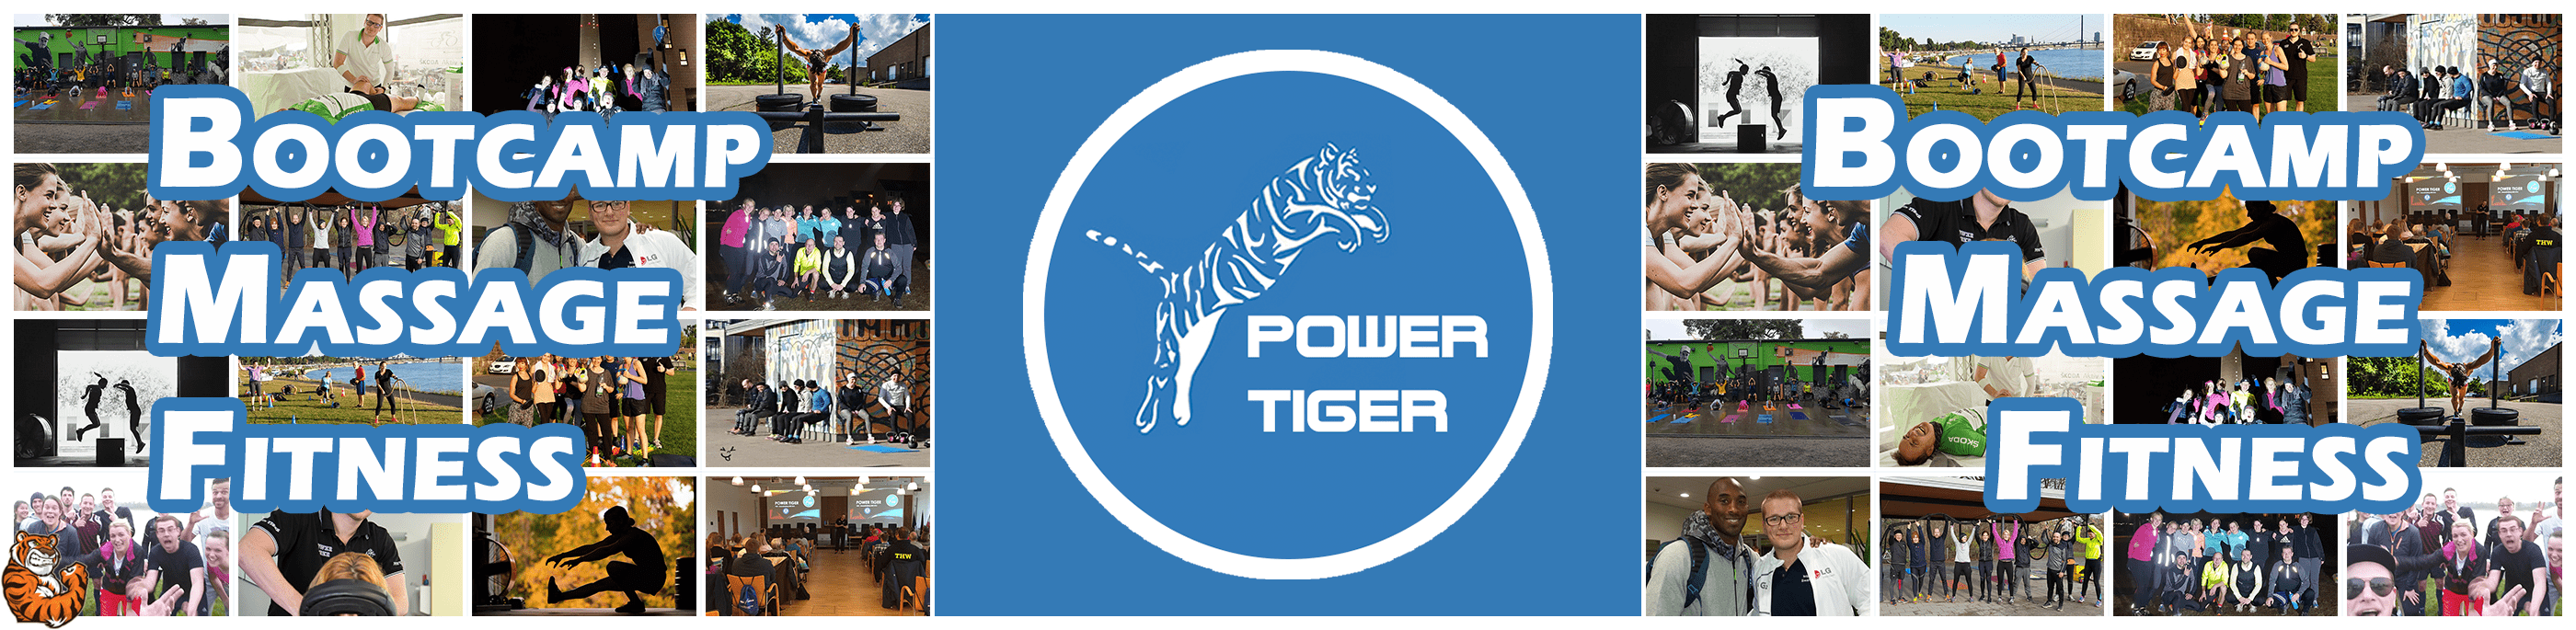 Power Tiger - Header - B-min